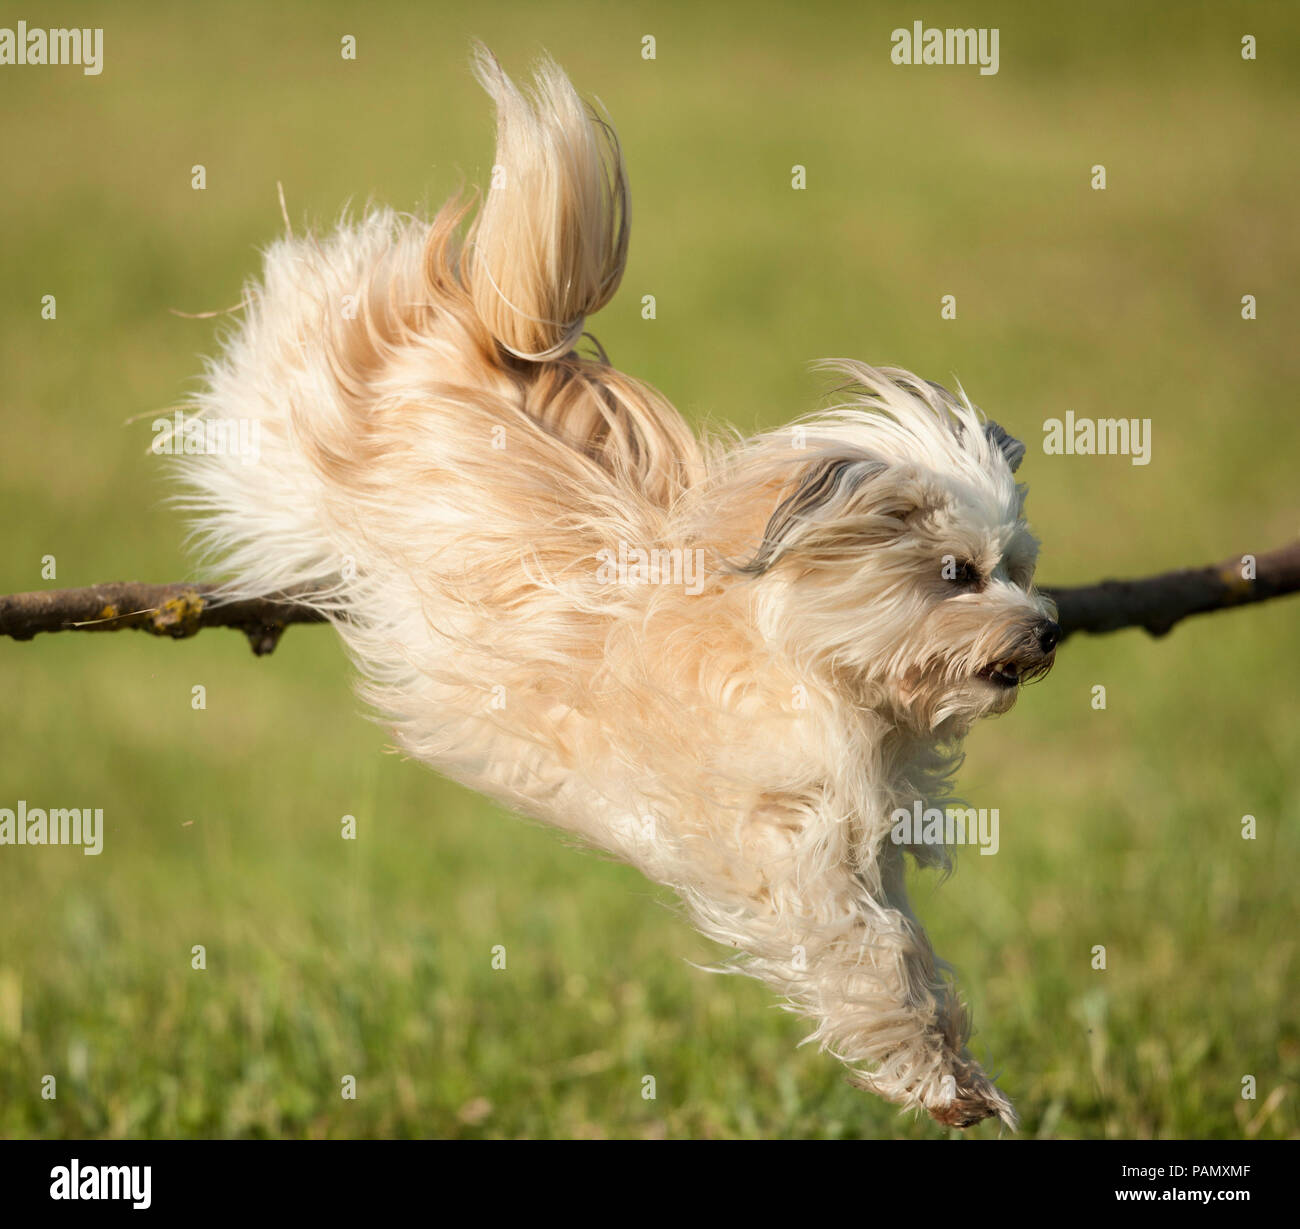 Bichón Habanero. Perro adulto saltar por encima de una rama. Alemania Foto de stock